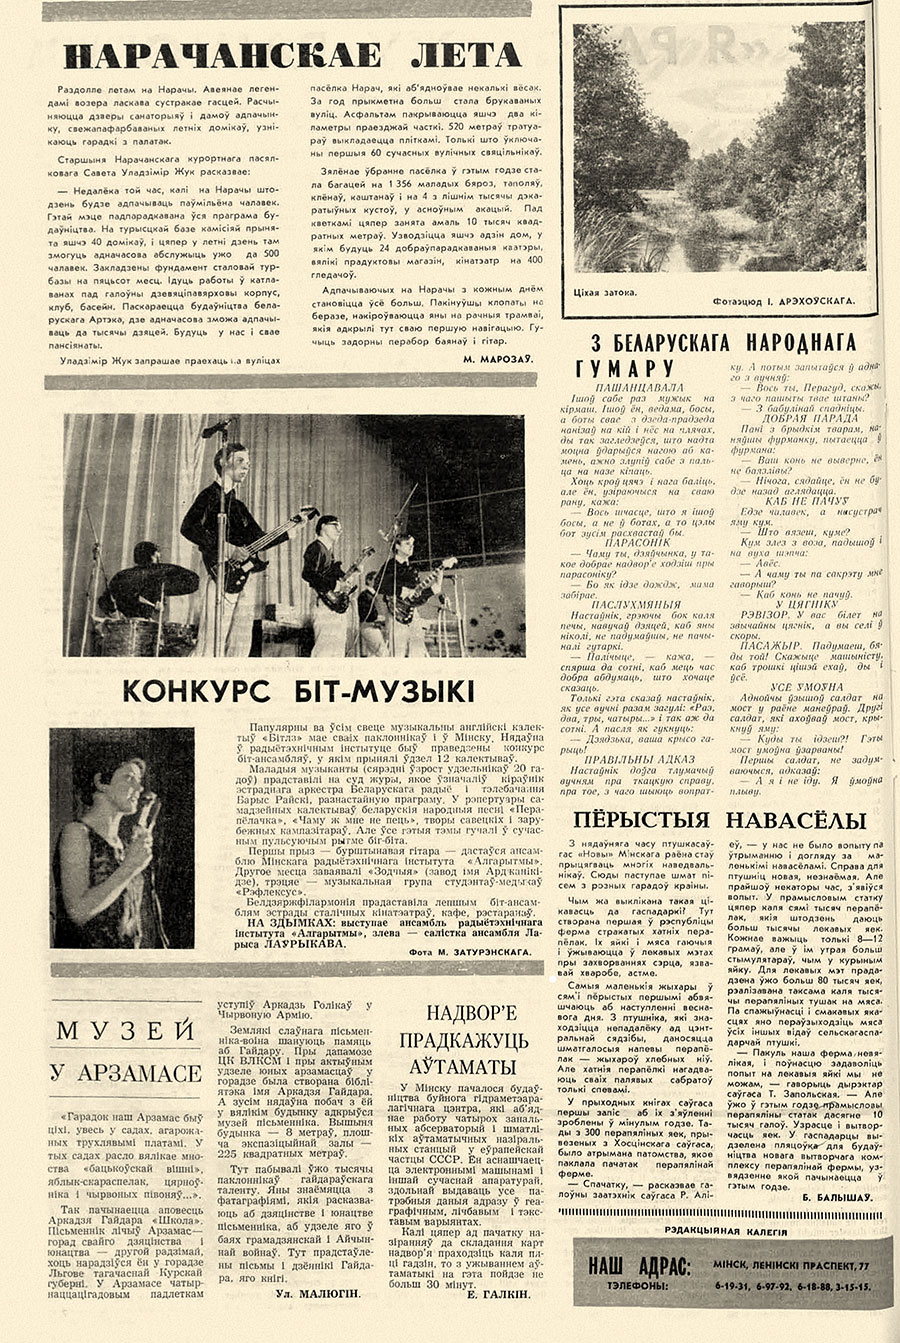 Конкурс бит-музыки. Газета Голас Радзимы (Минск) № 24 за июнь 1968 года, стр. 7, на белорусском языке